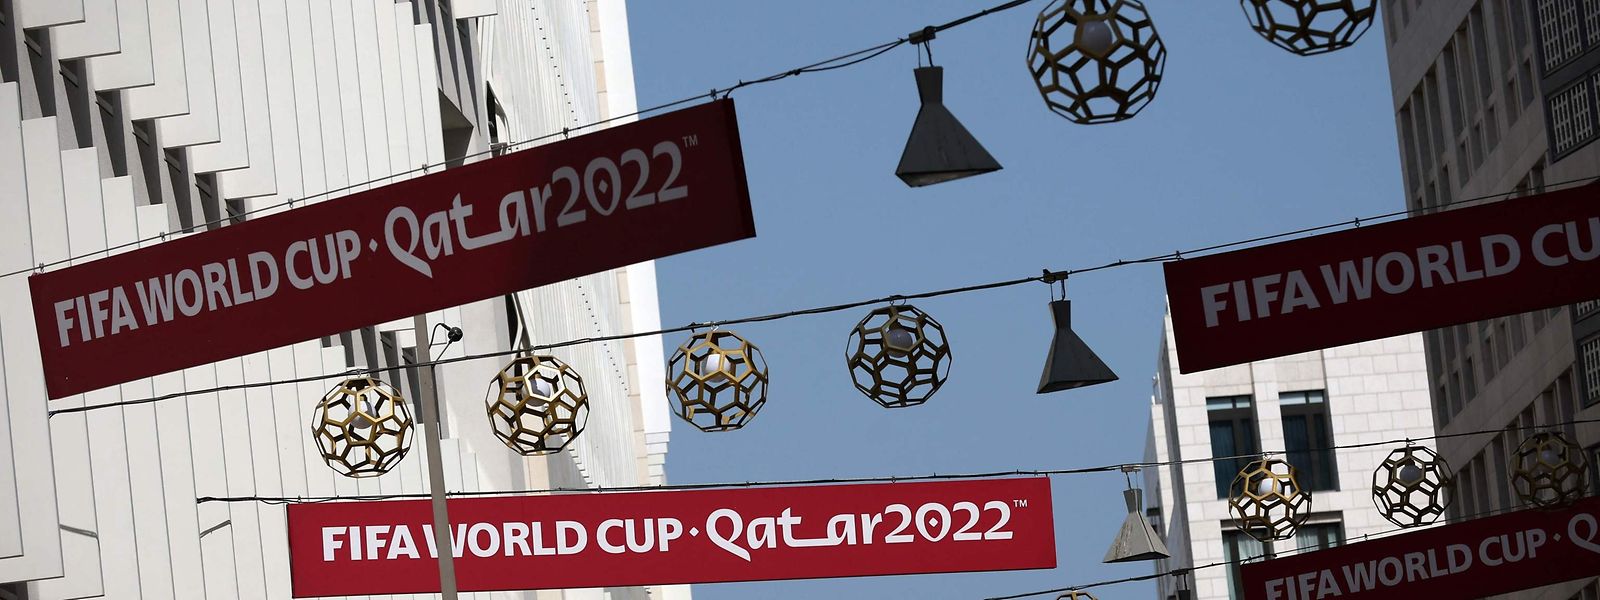 Des bannières de la Coupe du monde sont suspendues dans la rue à Doha.